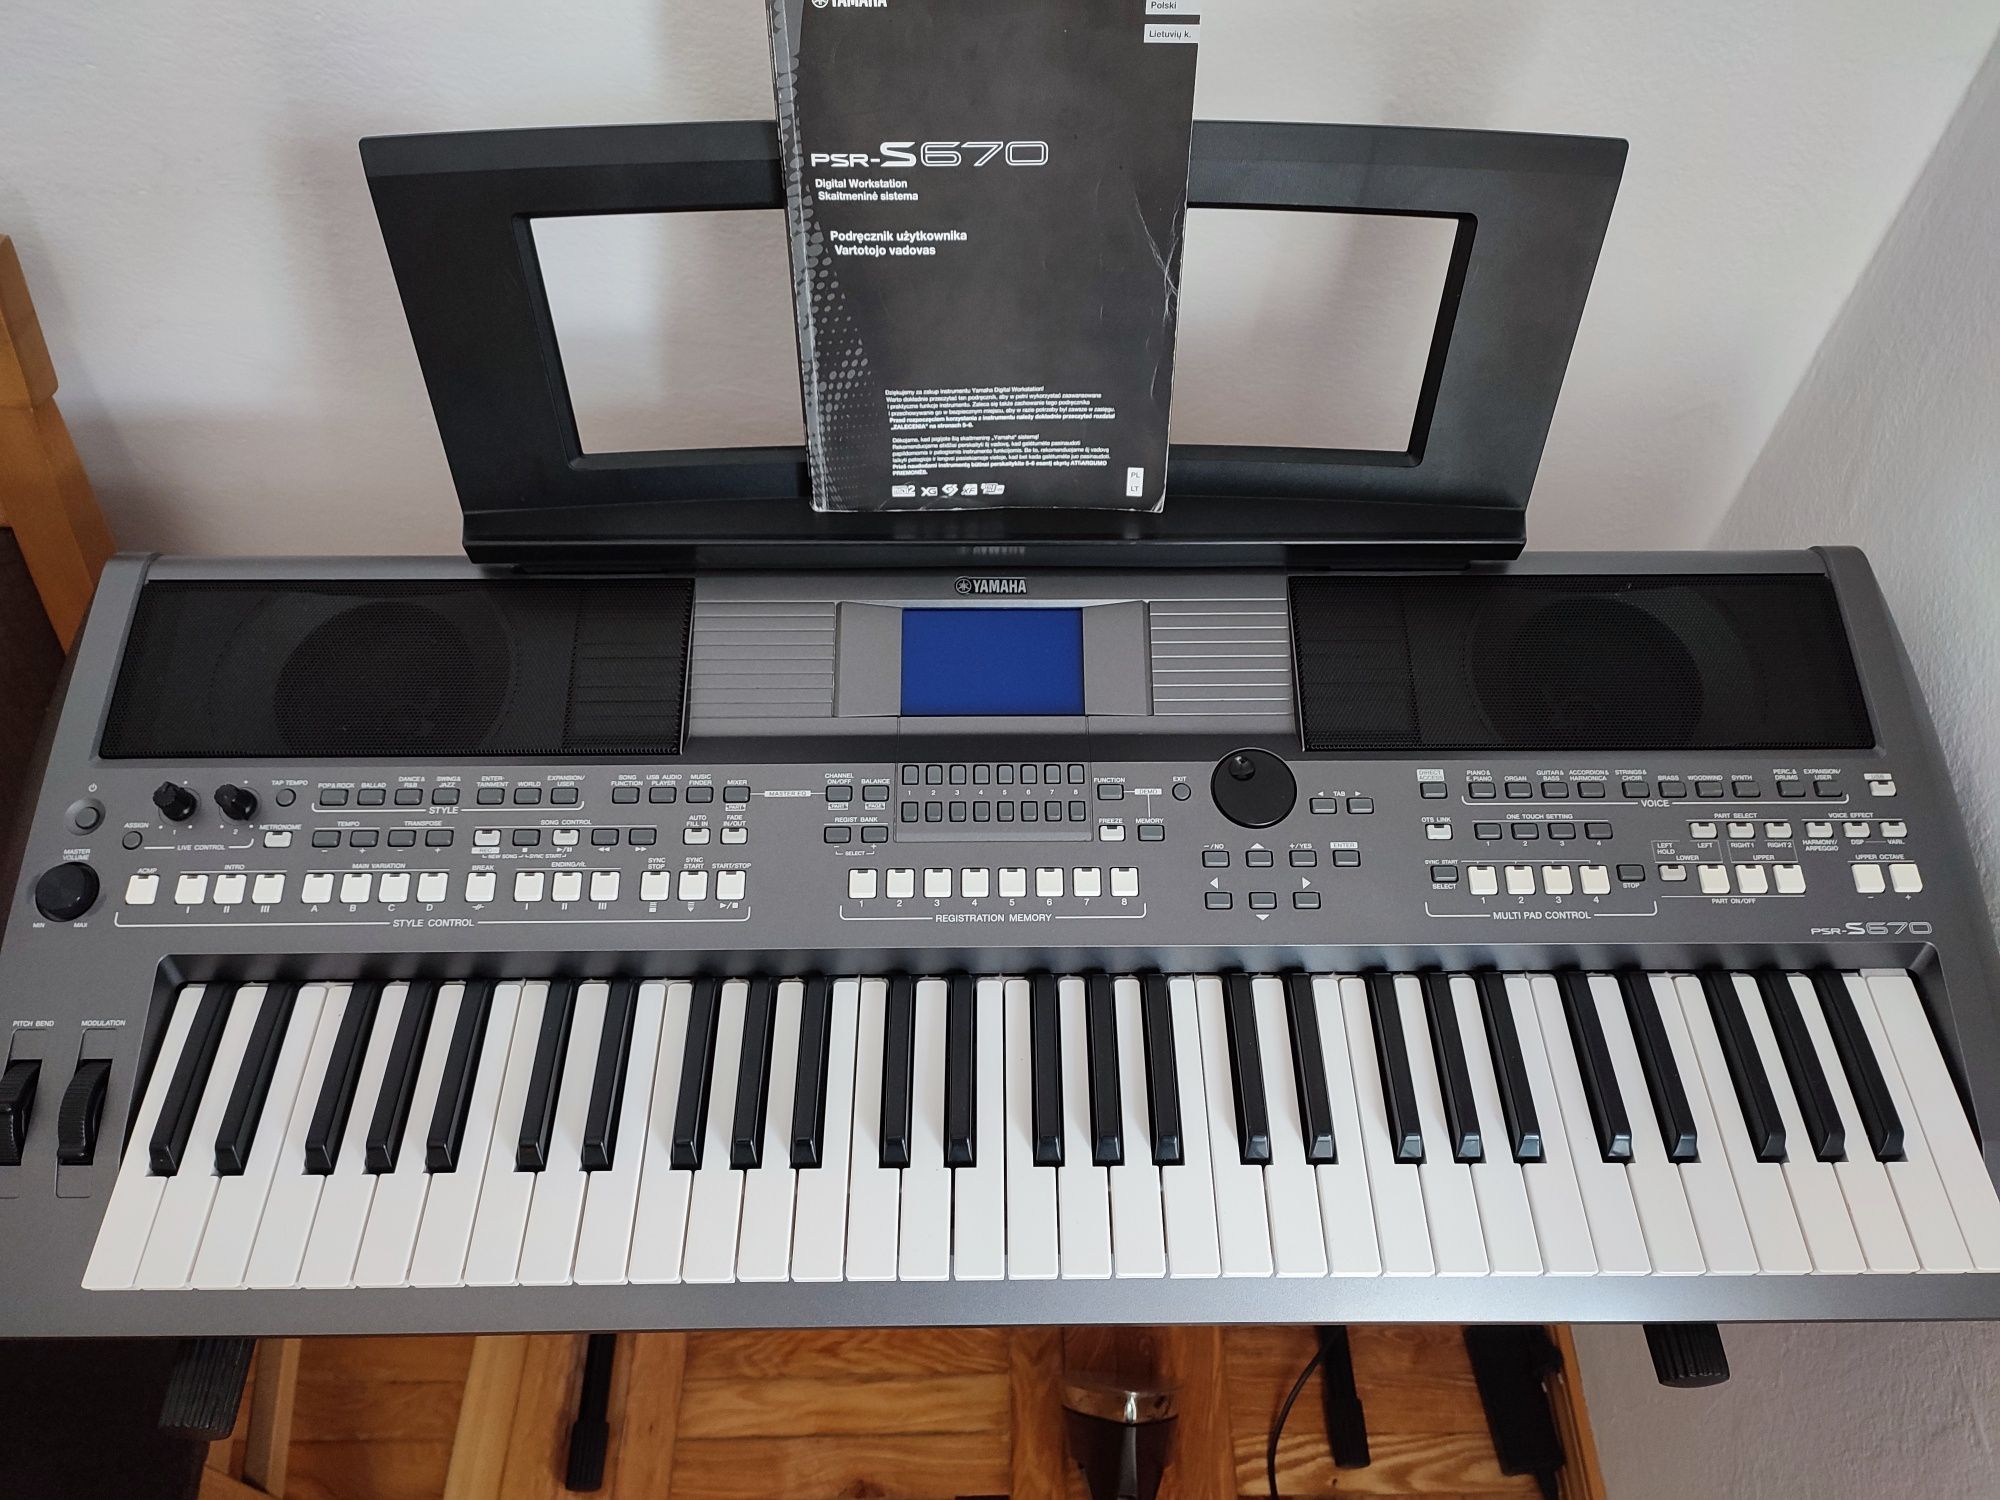 Keyboard Yamaha S 670